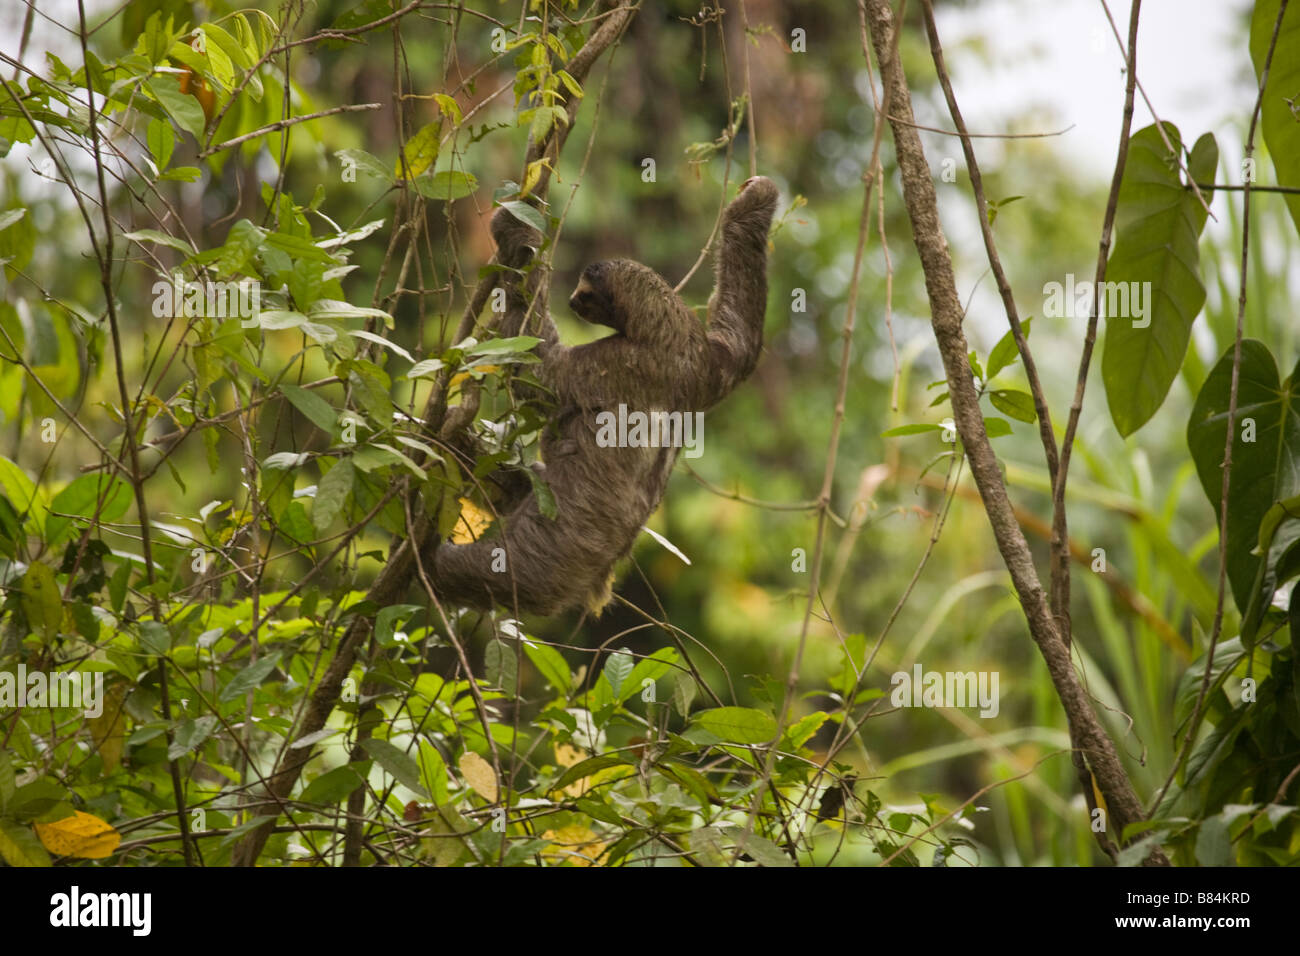 Un trois-toed Sloth, Bradypus variegatus, descend des membres inférieurs avec son bébé accroché à son estomac en Ile San Cristobal, Panama Banque D'Images